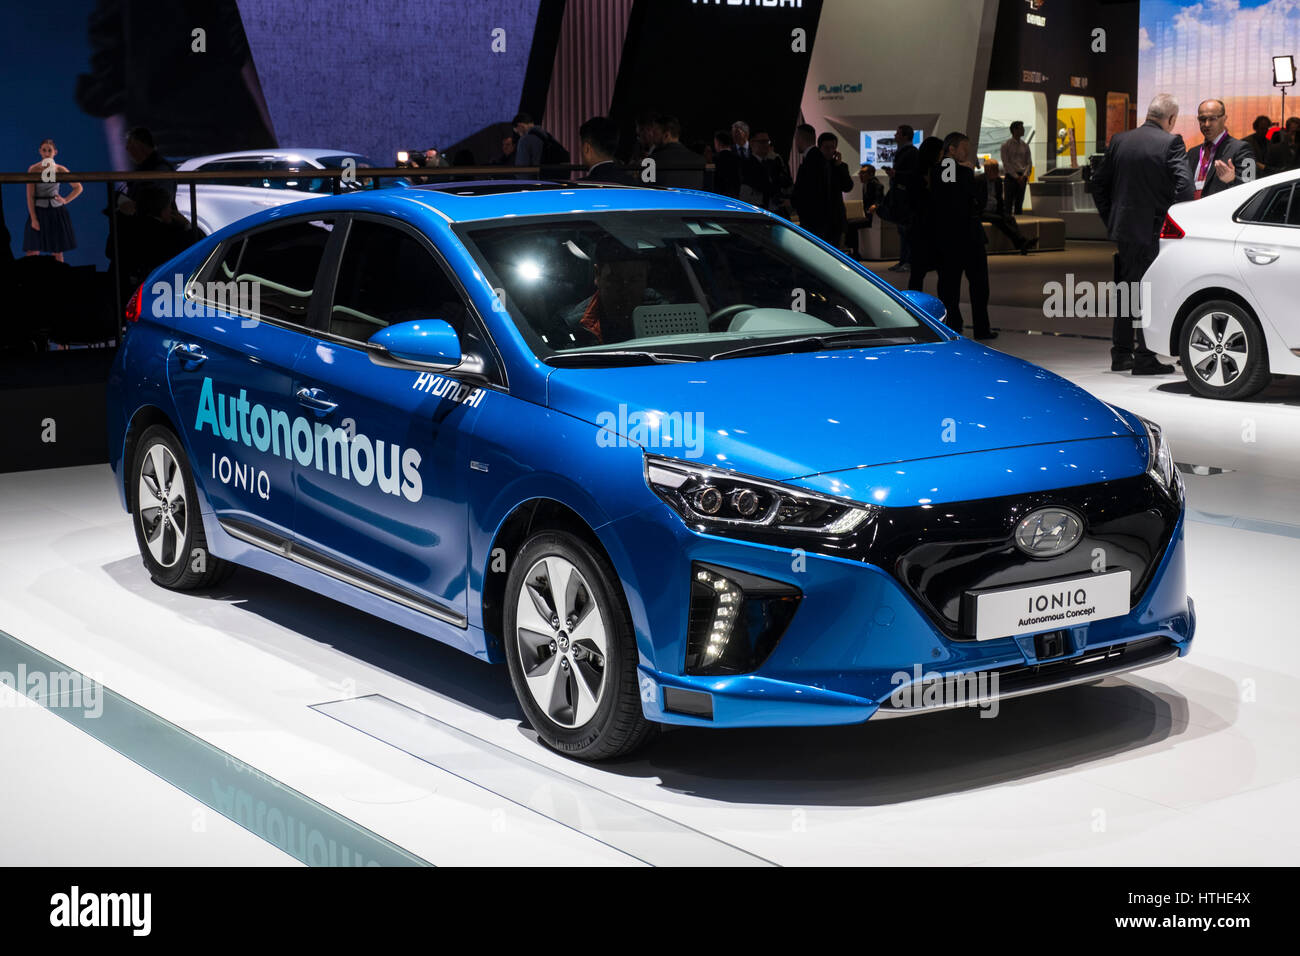 Hyundai Ioniq conduite véhicule concept autonome au 87e Salon International de l'Automobile à Genève Suisse 2017 Banque D'Images